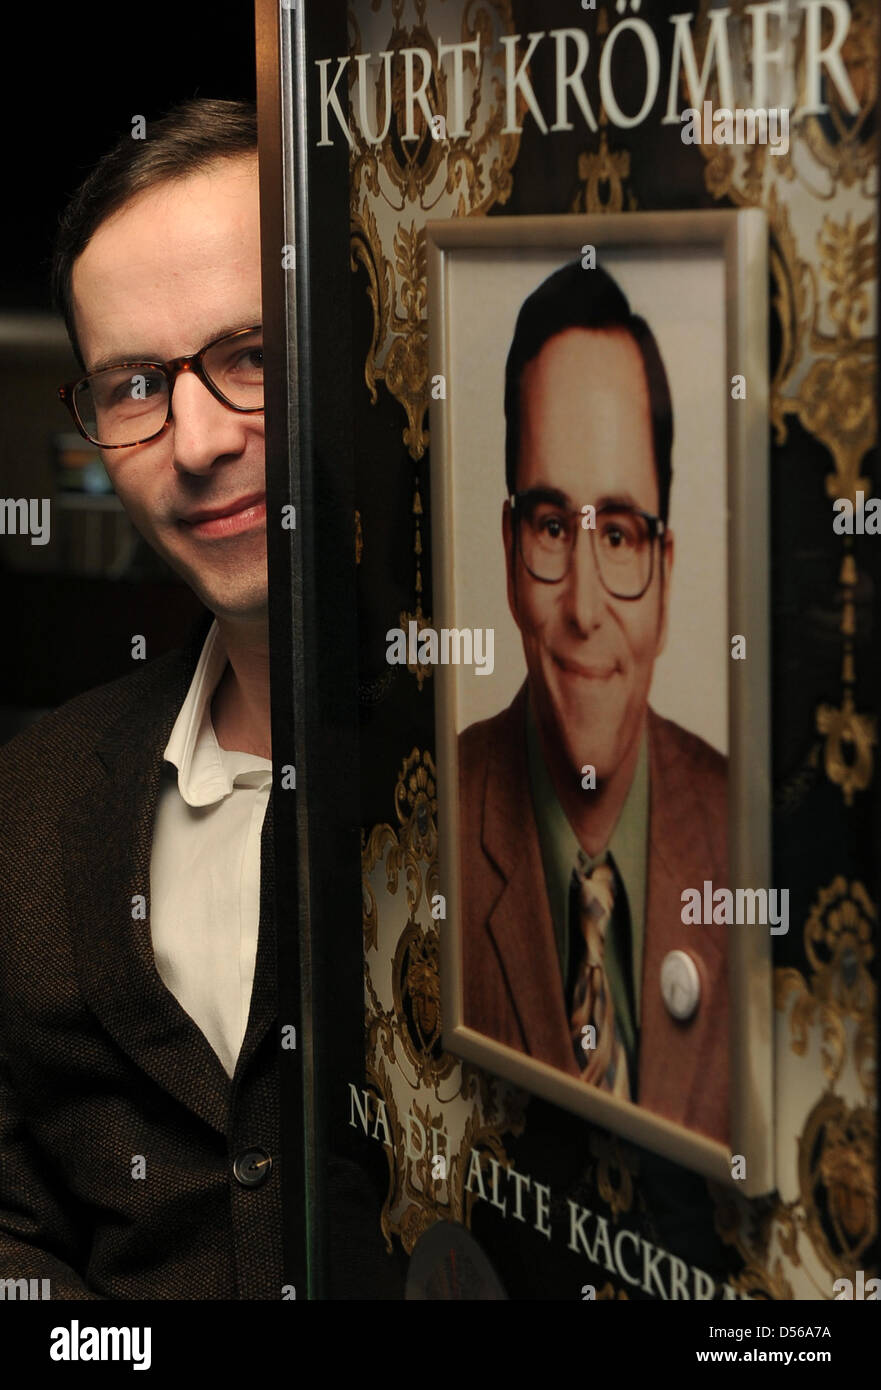 Humoriste allemand Kurt Kroemer pose avec son platinum DVD de la production 'Na du alte Kackbratze » lors d'une conférence de presse à Berlin, Allemagne, 9 novembre 2010. Le nouveau DVD 'Kroem Kroem le de' sera disponible à partir du 12 novembre 2010. Photo : Jens Kalaene Banque D'Images